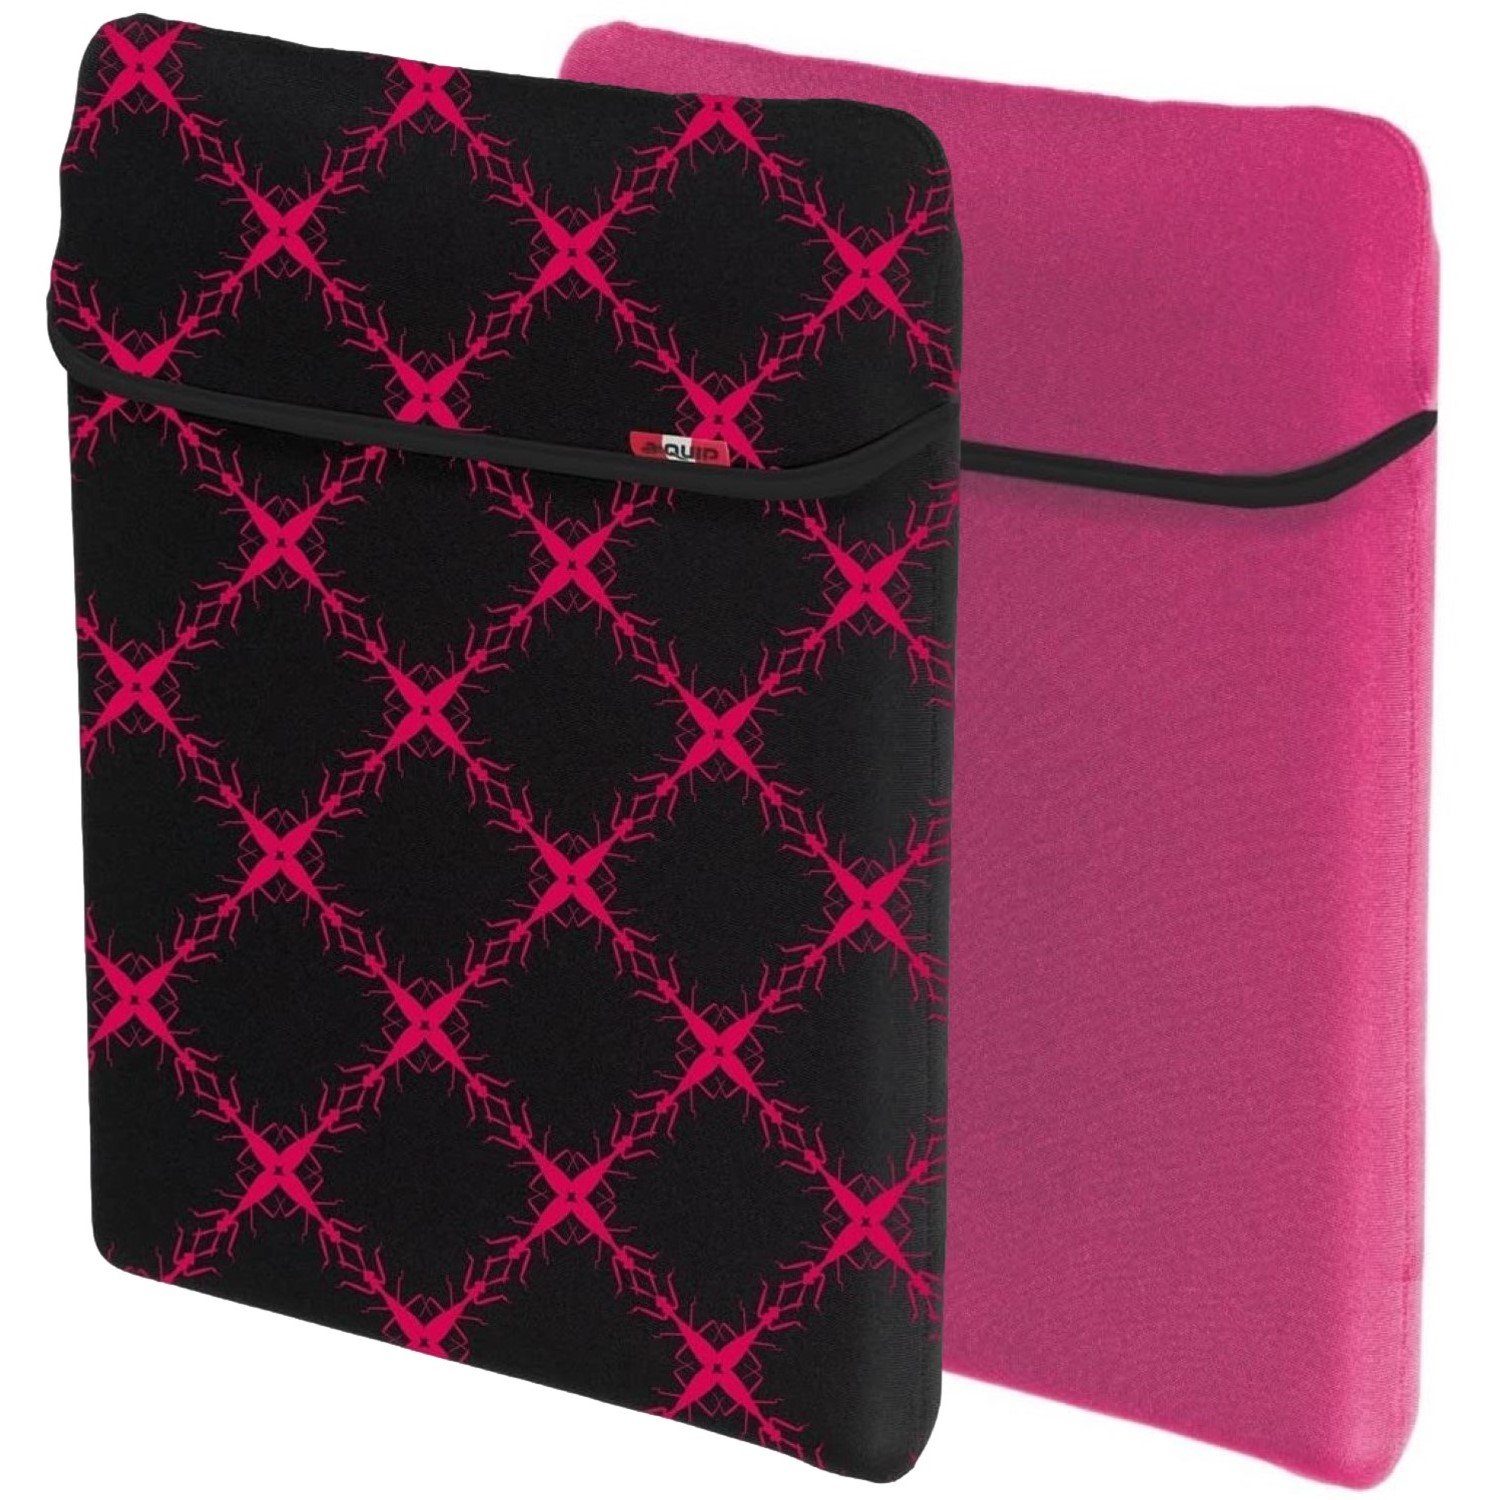 aha Laptoptasche Notebook Cover Tasche Schutz-Hülle Case Etui, passend für  Notebook und Tablet PC 13" 13,3" 13,5" 14" 14,1" Zoll